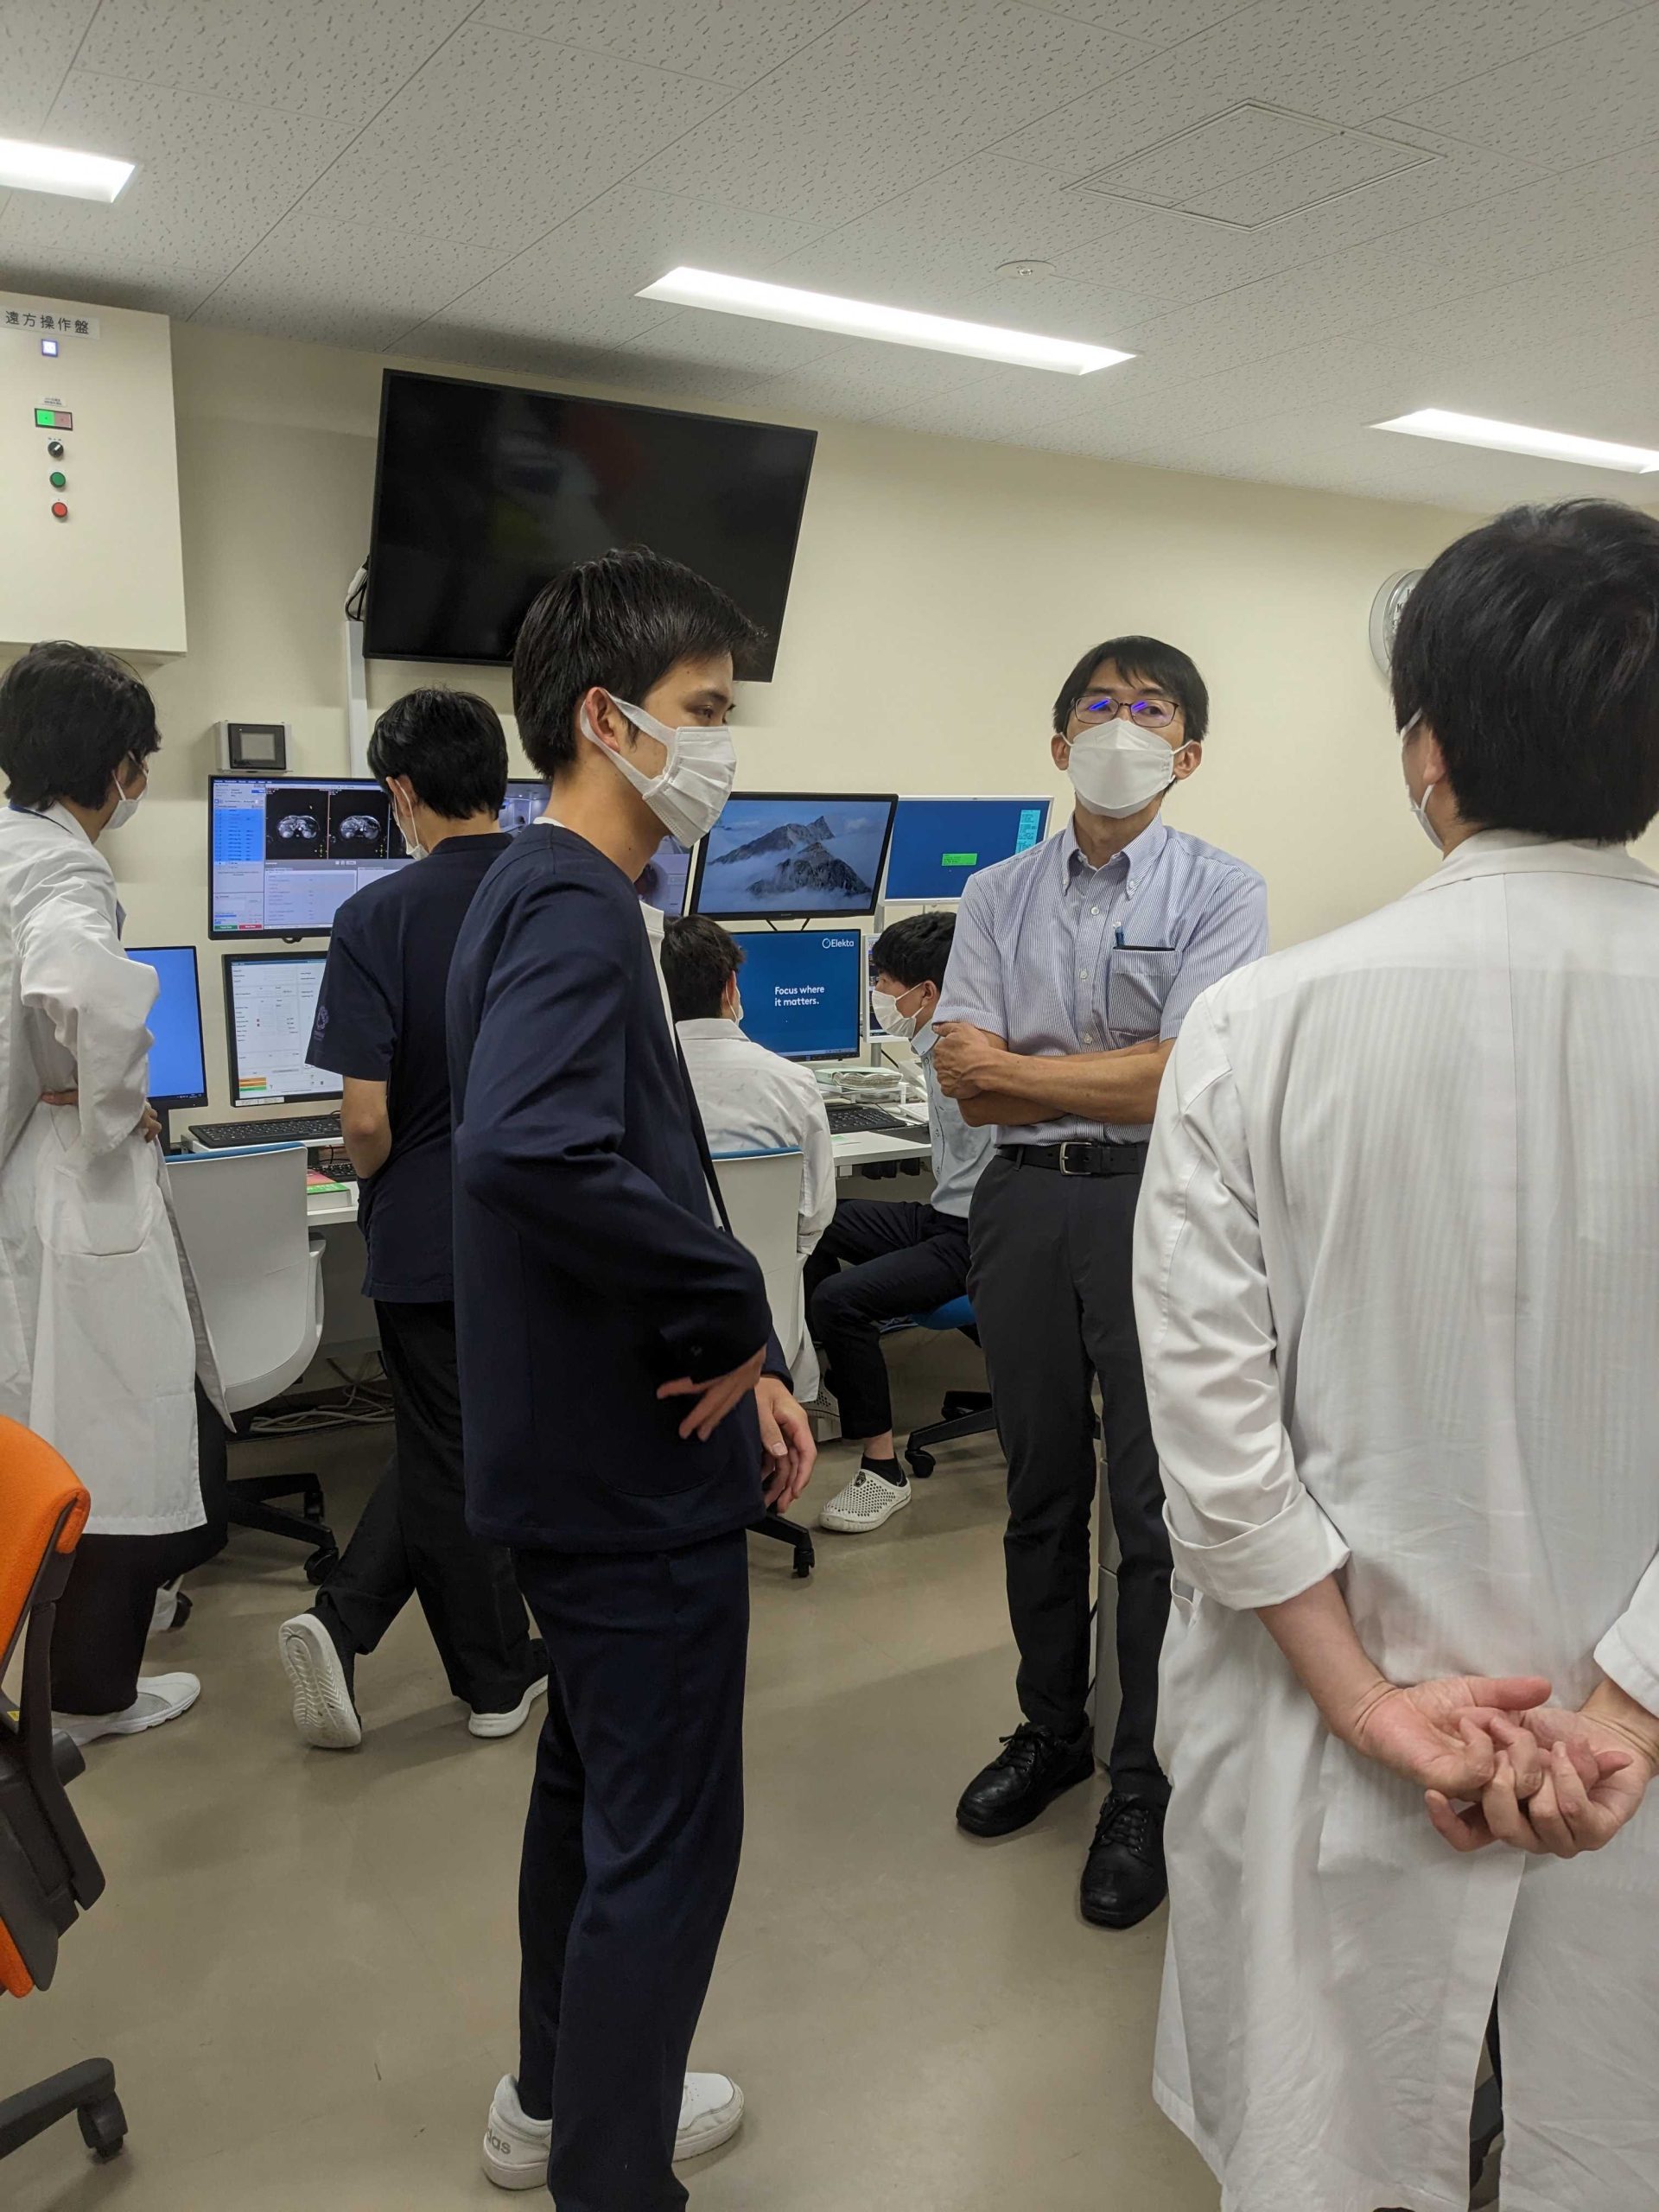 2023.10.3 共同研究先:筑波大学の黒田研究室から放射線治療中の臓器の動きを予測する支援技術がプレスリリースされました